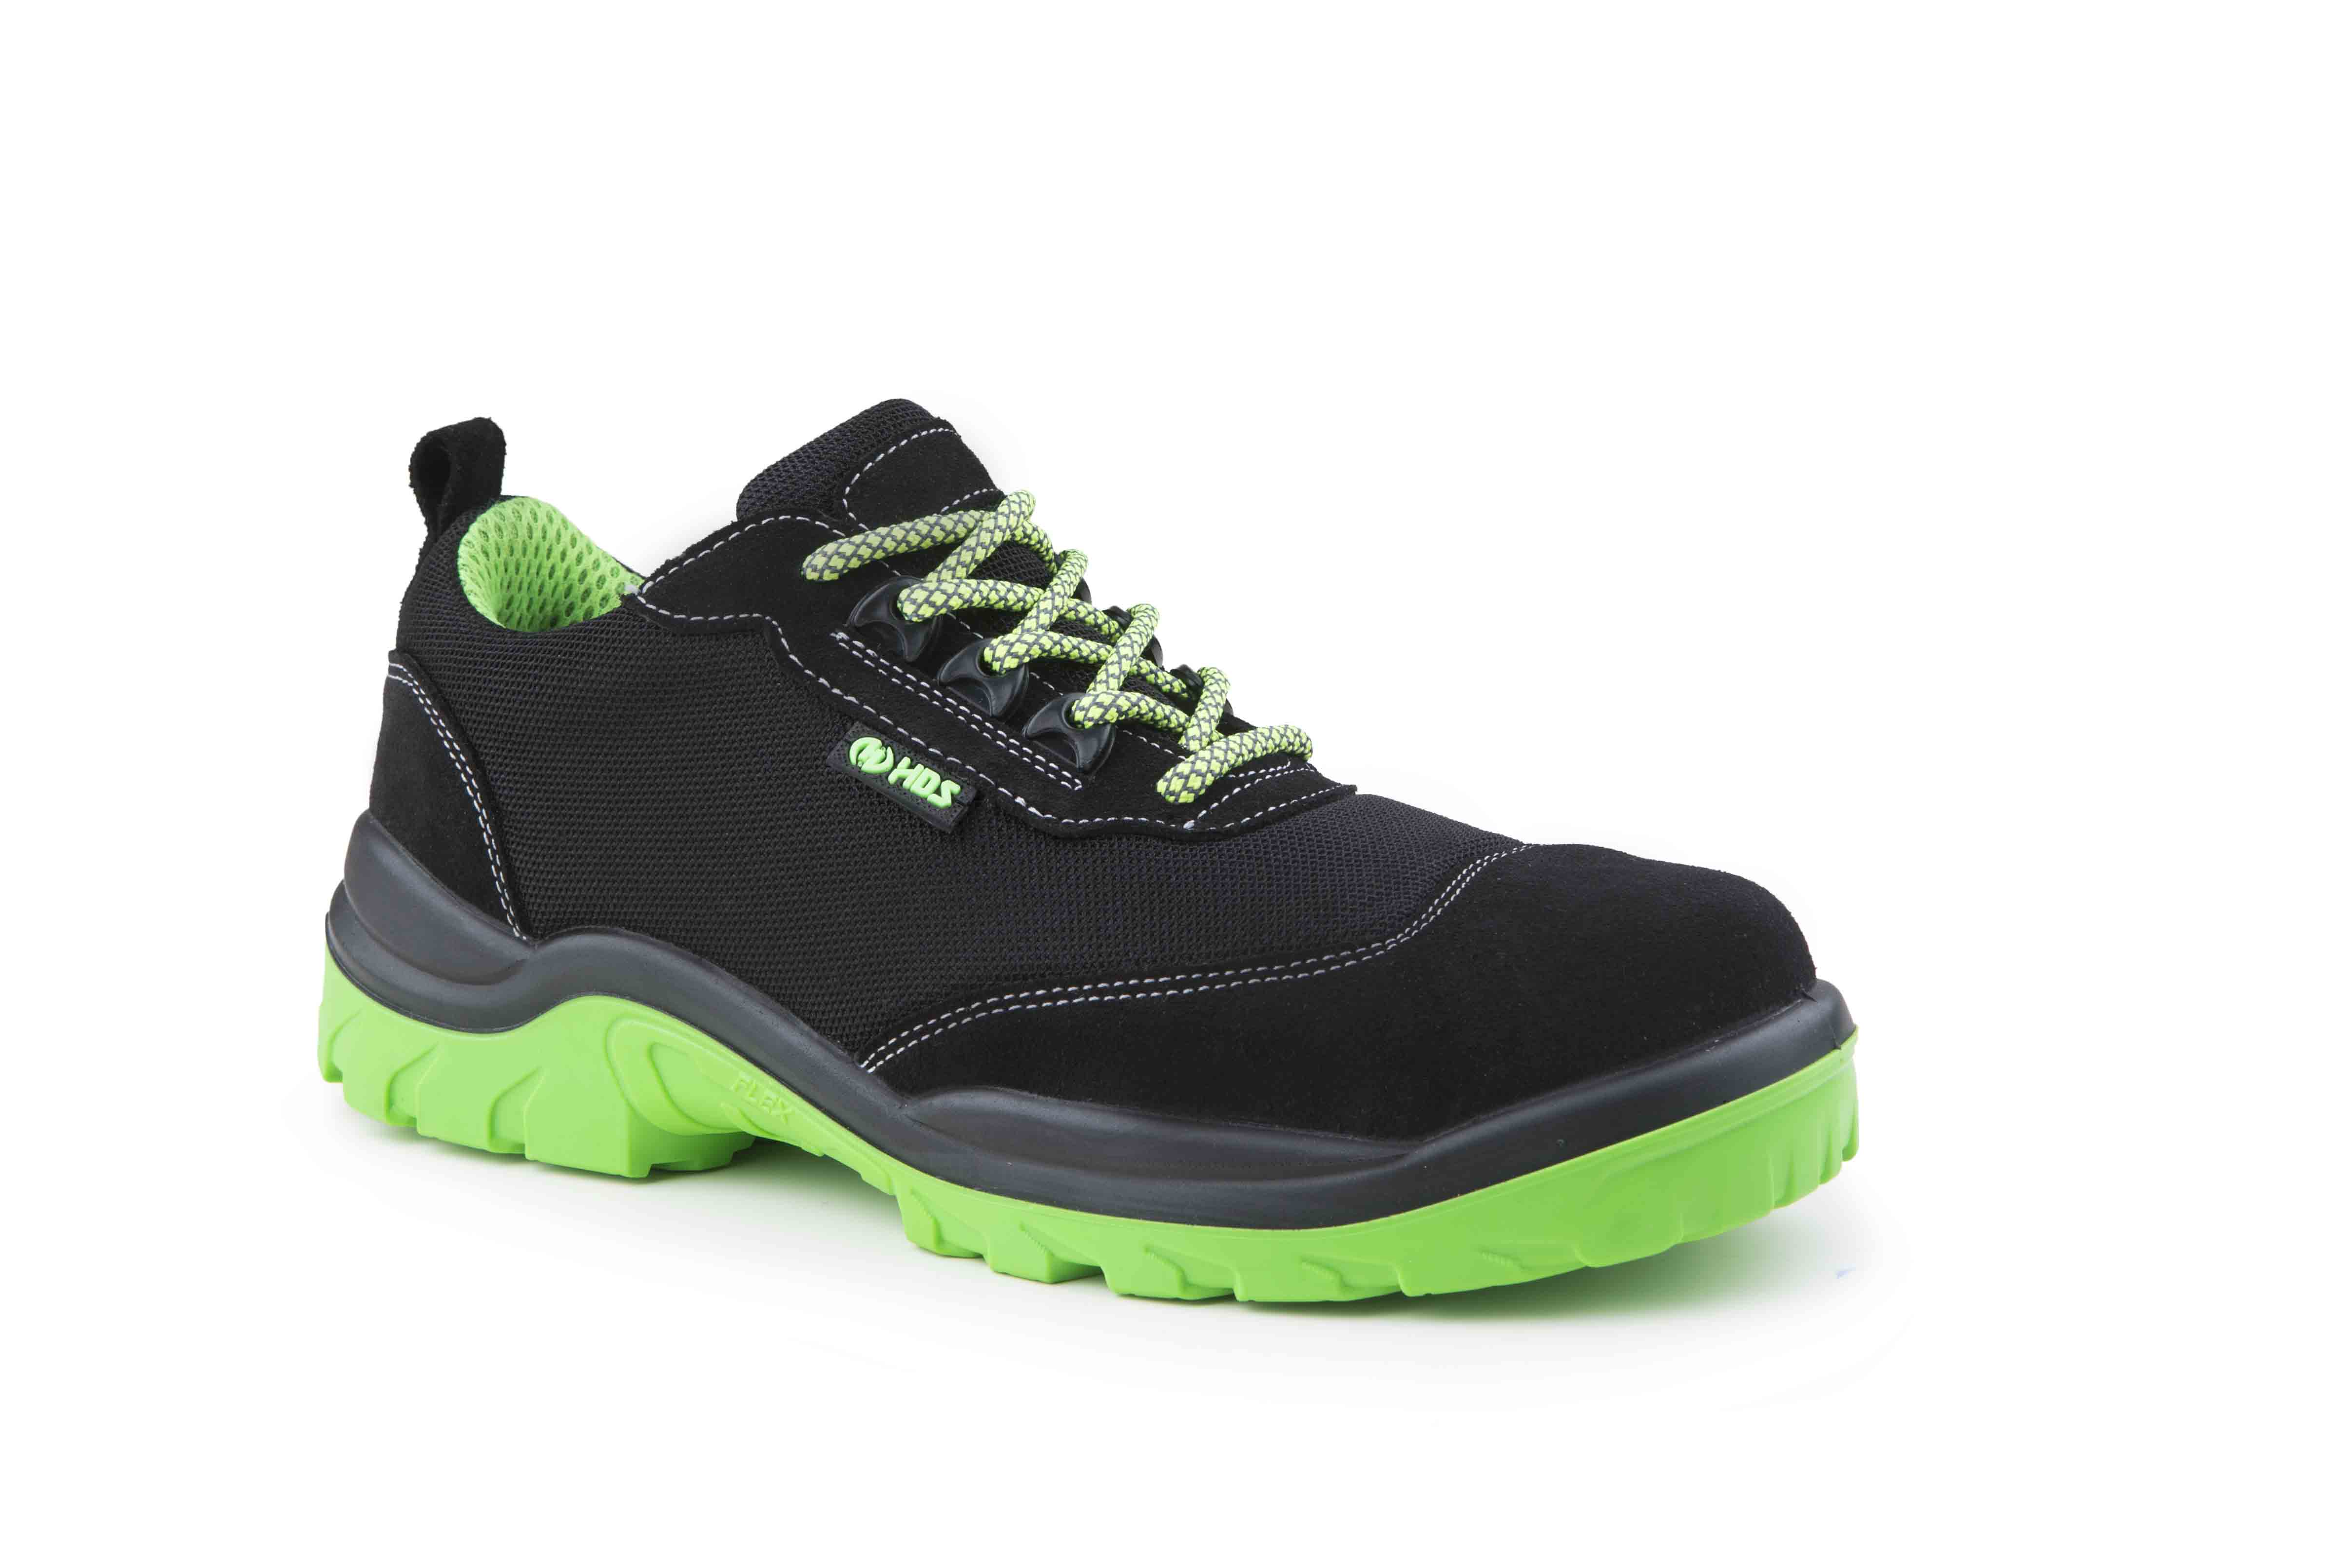 HDS İş Güvenlik Ayakkabıları, Flx Freedom Modeli